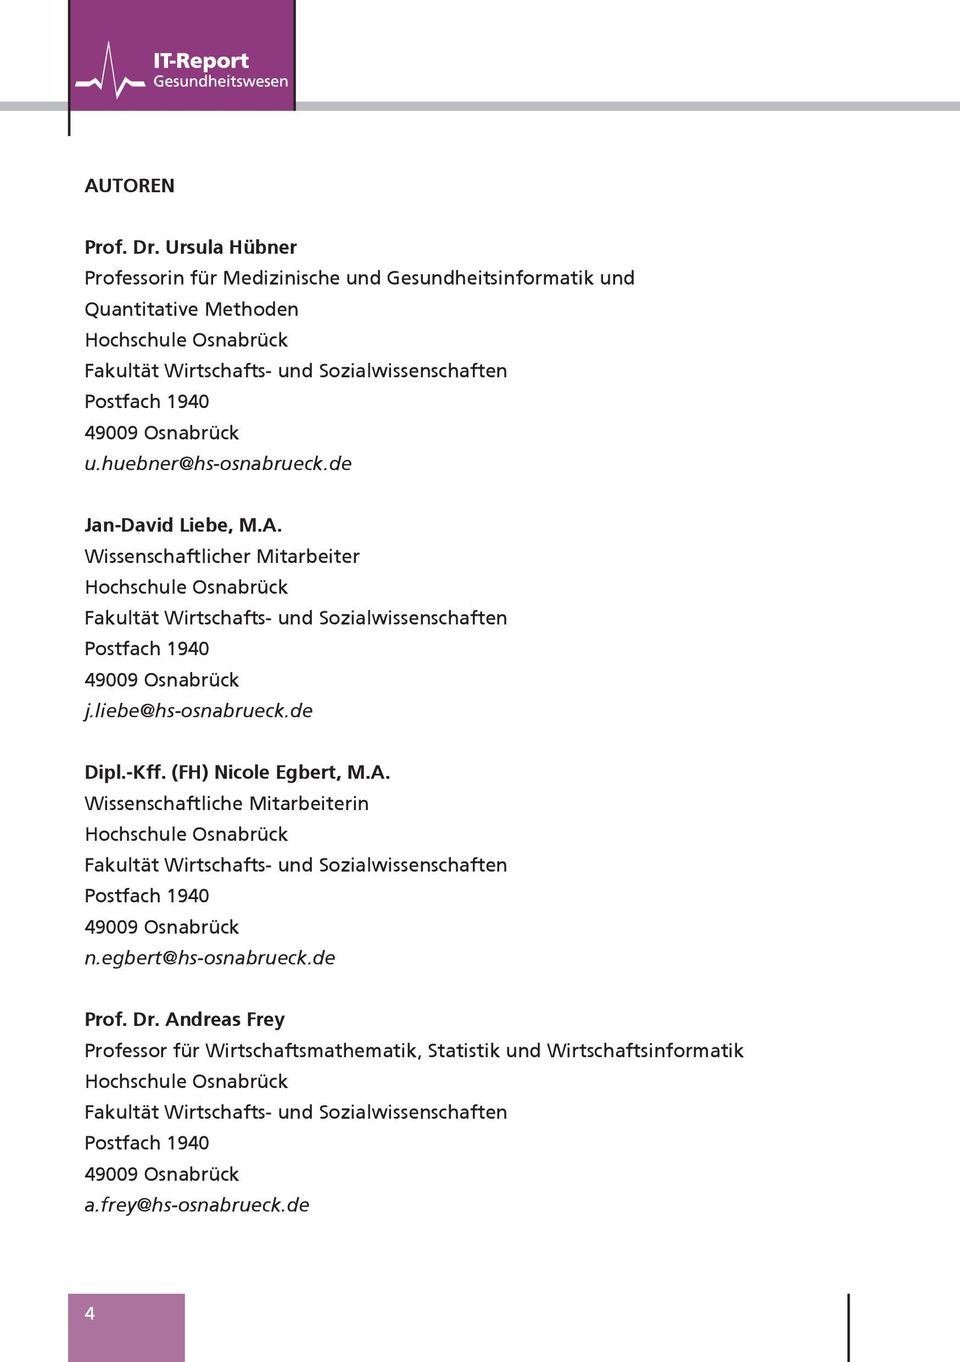 huebner@hs-osnabrueck.de Jan-David Liebe, M.A. Wissenschaftlicher Mitarbeiter Hochschule Osnabrück Fakultät Wirtschafts- und Sozialwissenschaften Postfach 1940 49009 Osnabrück j.liebe@hs-osnabrueck.